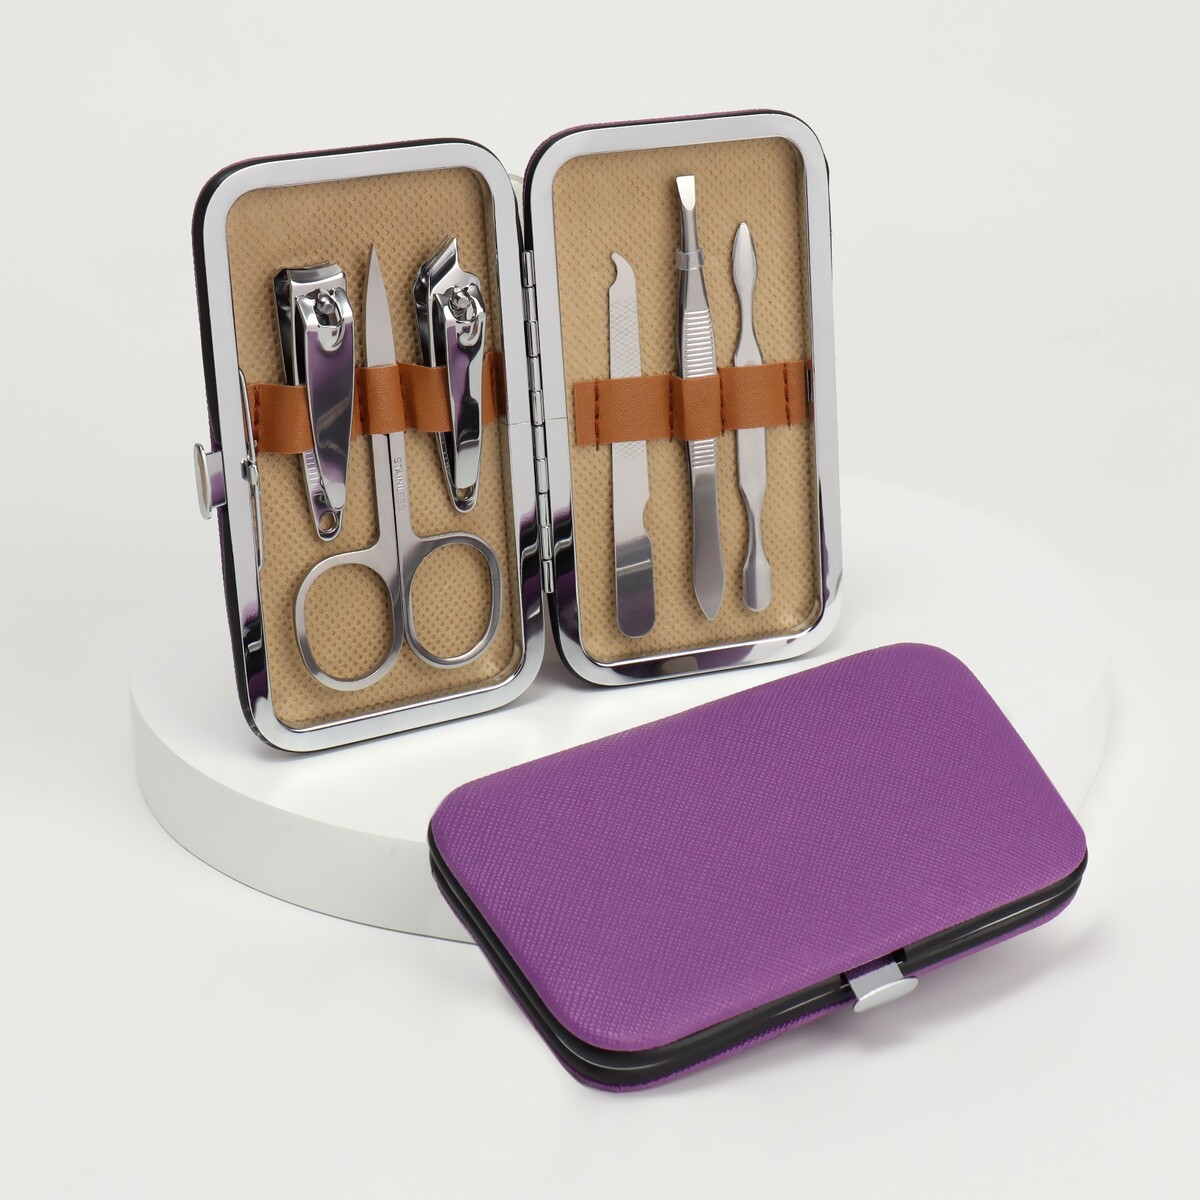 Набор маникюрный, 6 предметов, в футляре, цвет фиолетовый набор кистей для макияжа 6 предметов pvc пакет фиолетовый